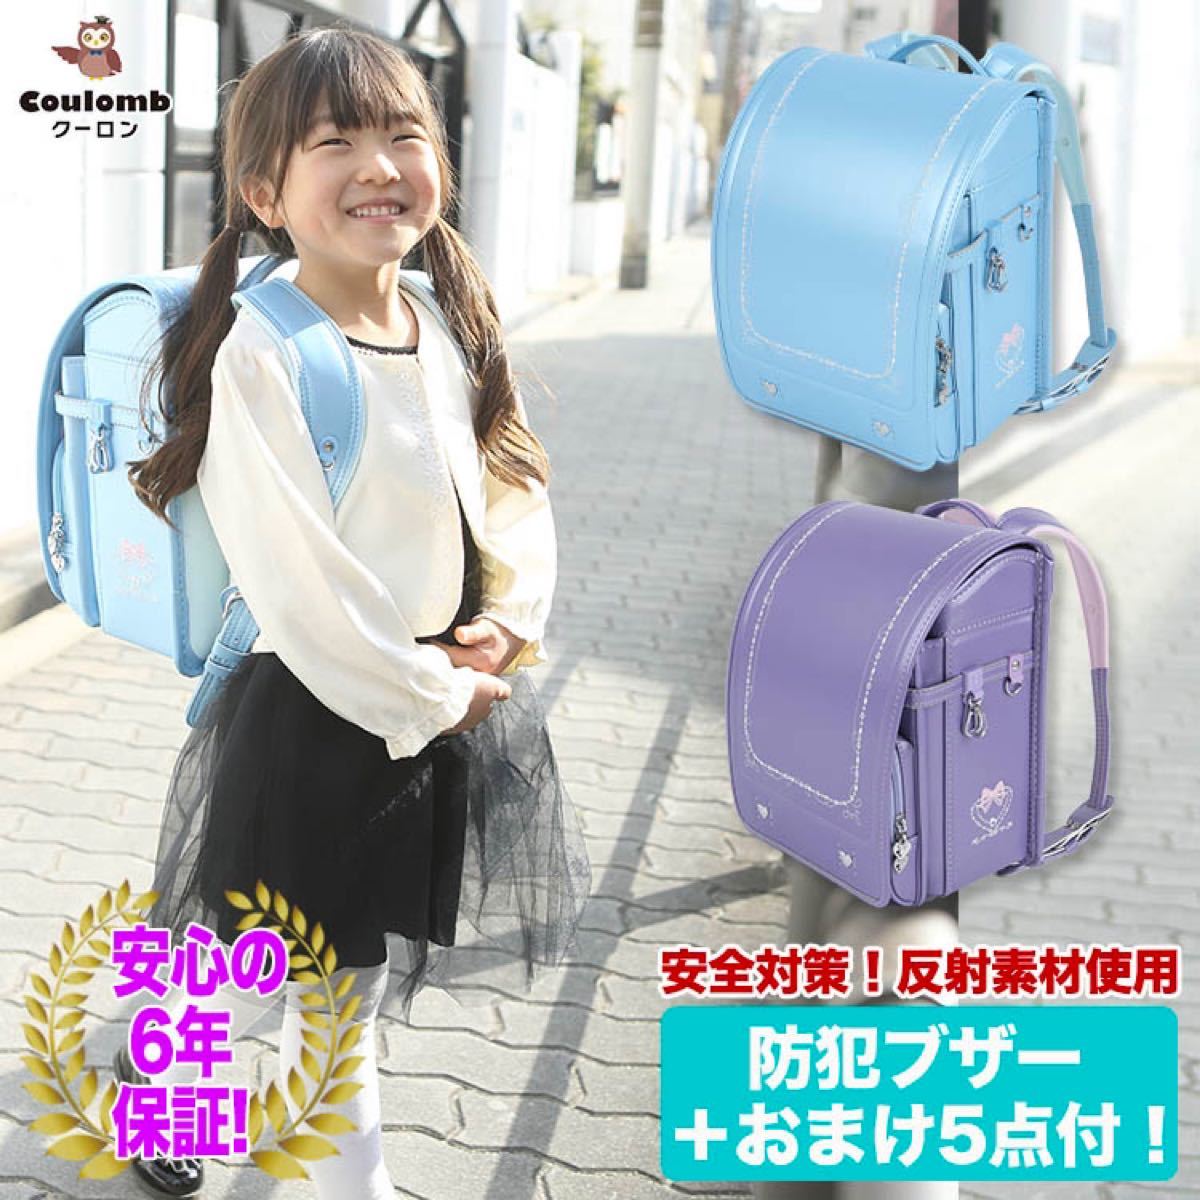 ランドセル 新品 女の子 入学祝い 入園 可愛い ブルー 刺繍 高品質 高級 バッグ メール便送料無料